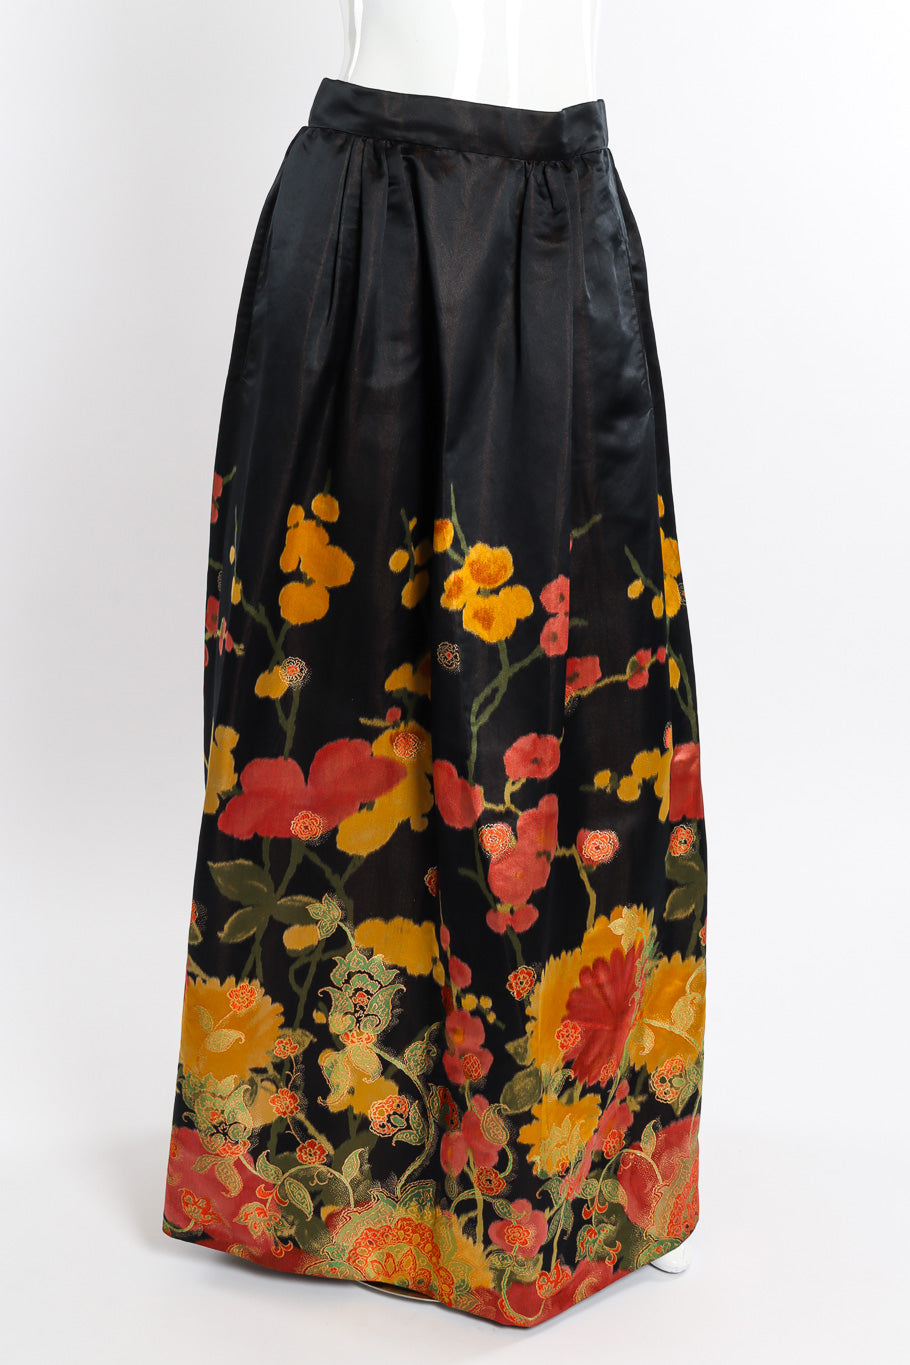 Vintage I.Magnin Floral Brocade Ball Skirt front on mannequin @recessla